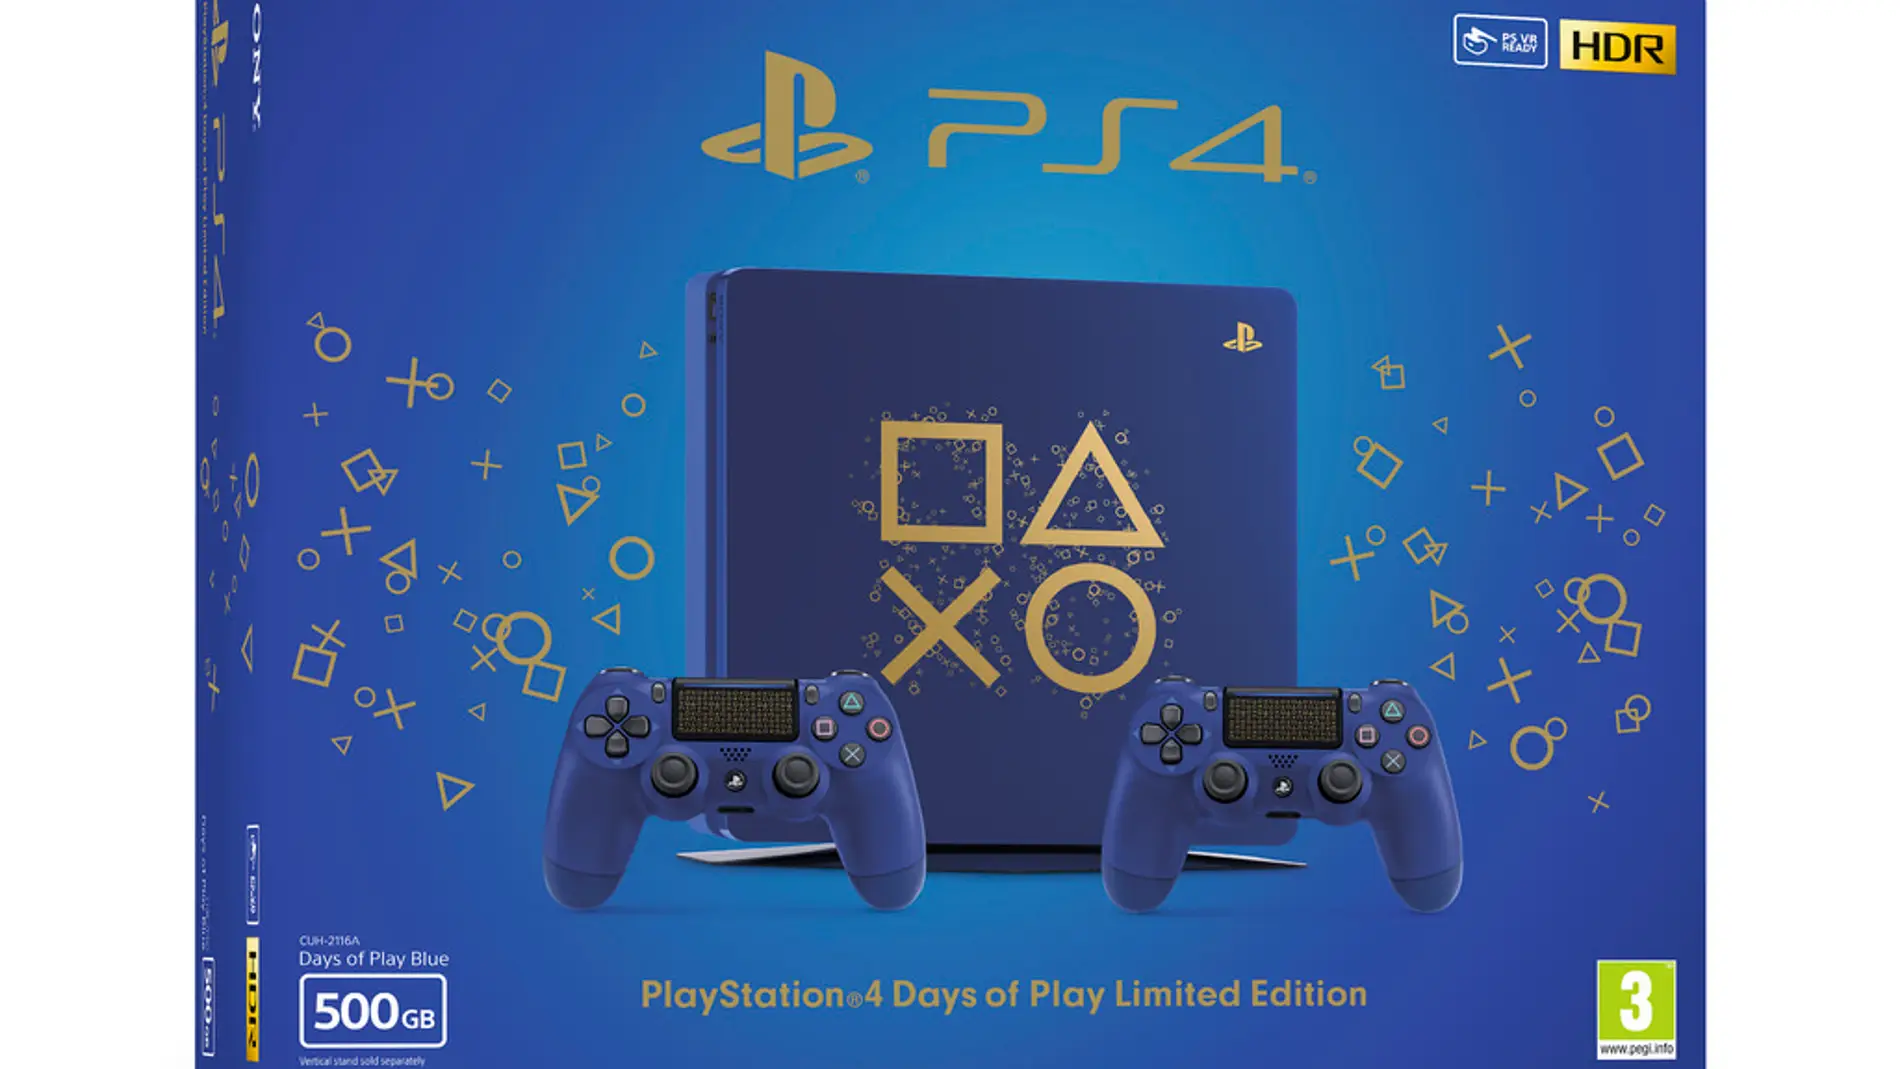 Edición limitada PlayStation 4 Days of Play